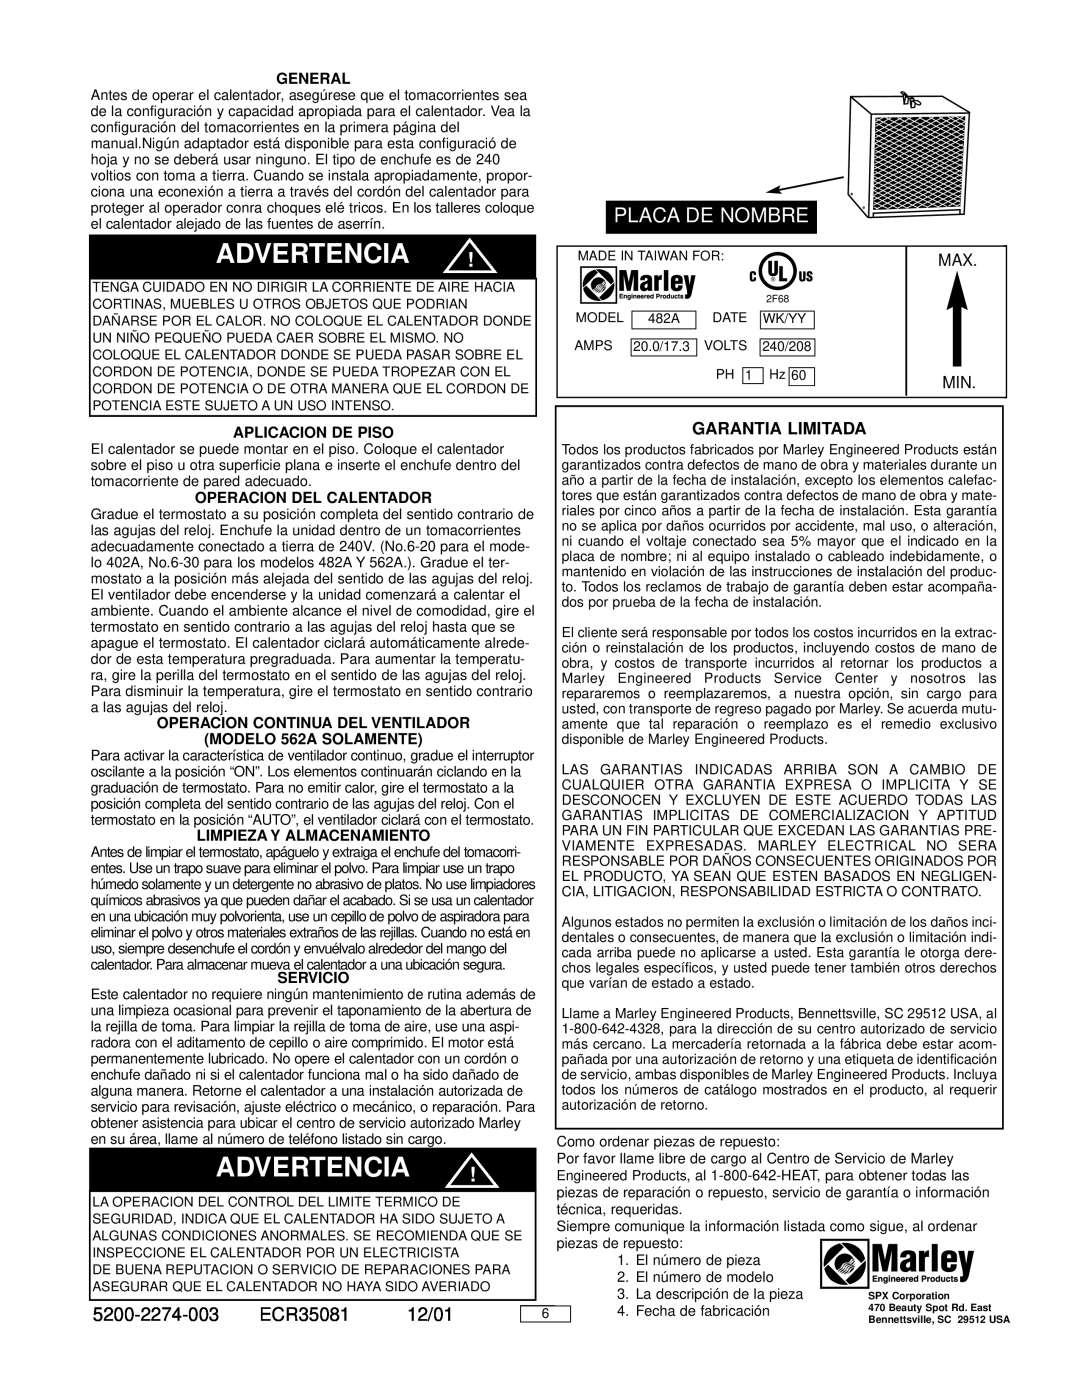 Marley Engineered Products 482A Placa De Nombre, ECR35081, Garantia Limitada, General, Aplicacion De Piso, Servicio, 12/01 